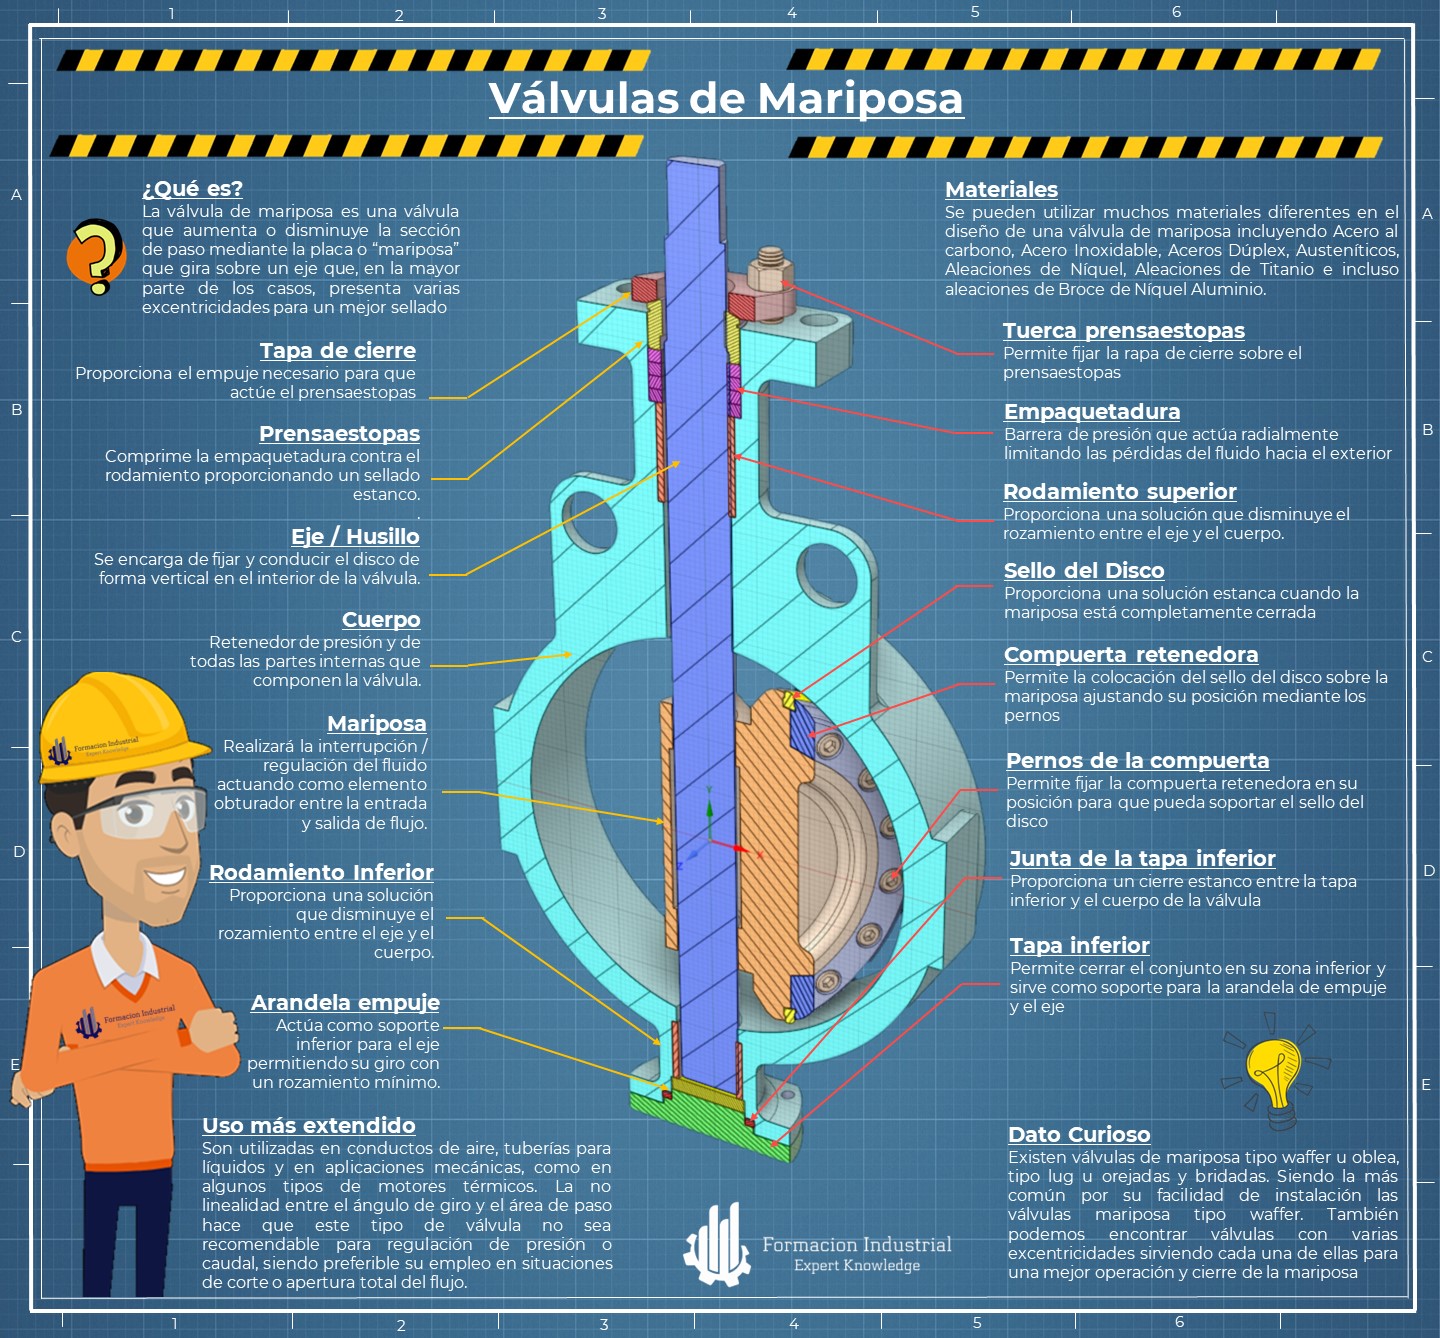 Infografía explicativa sobre las características y beneficios de las válvulas de mariposa en la industria